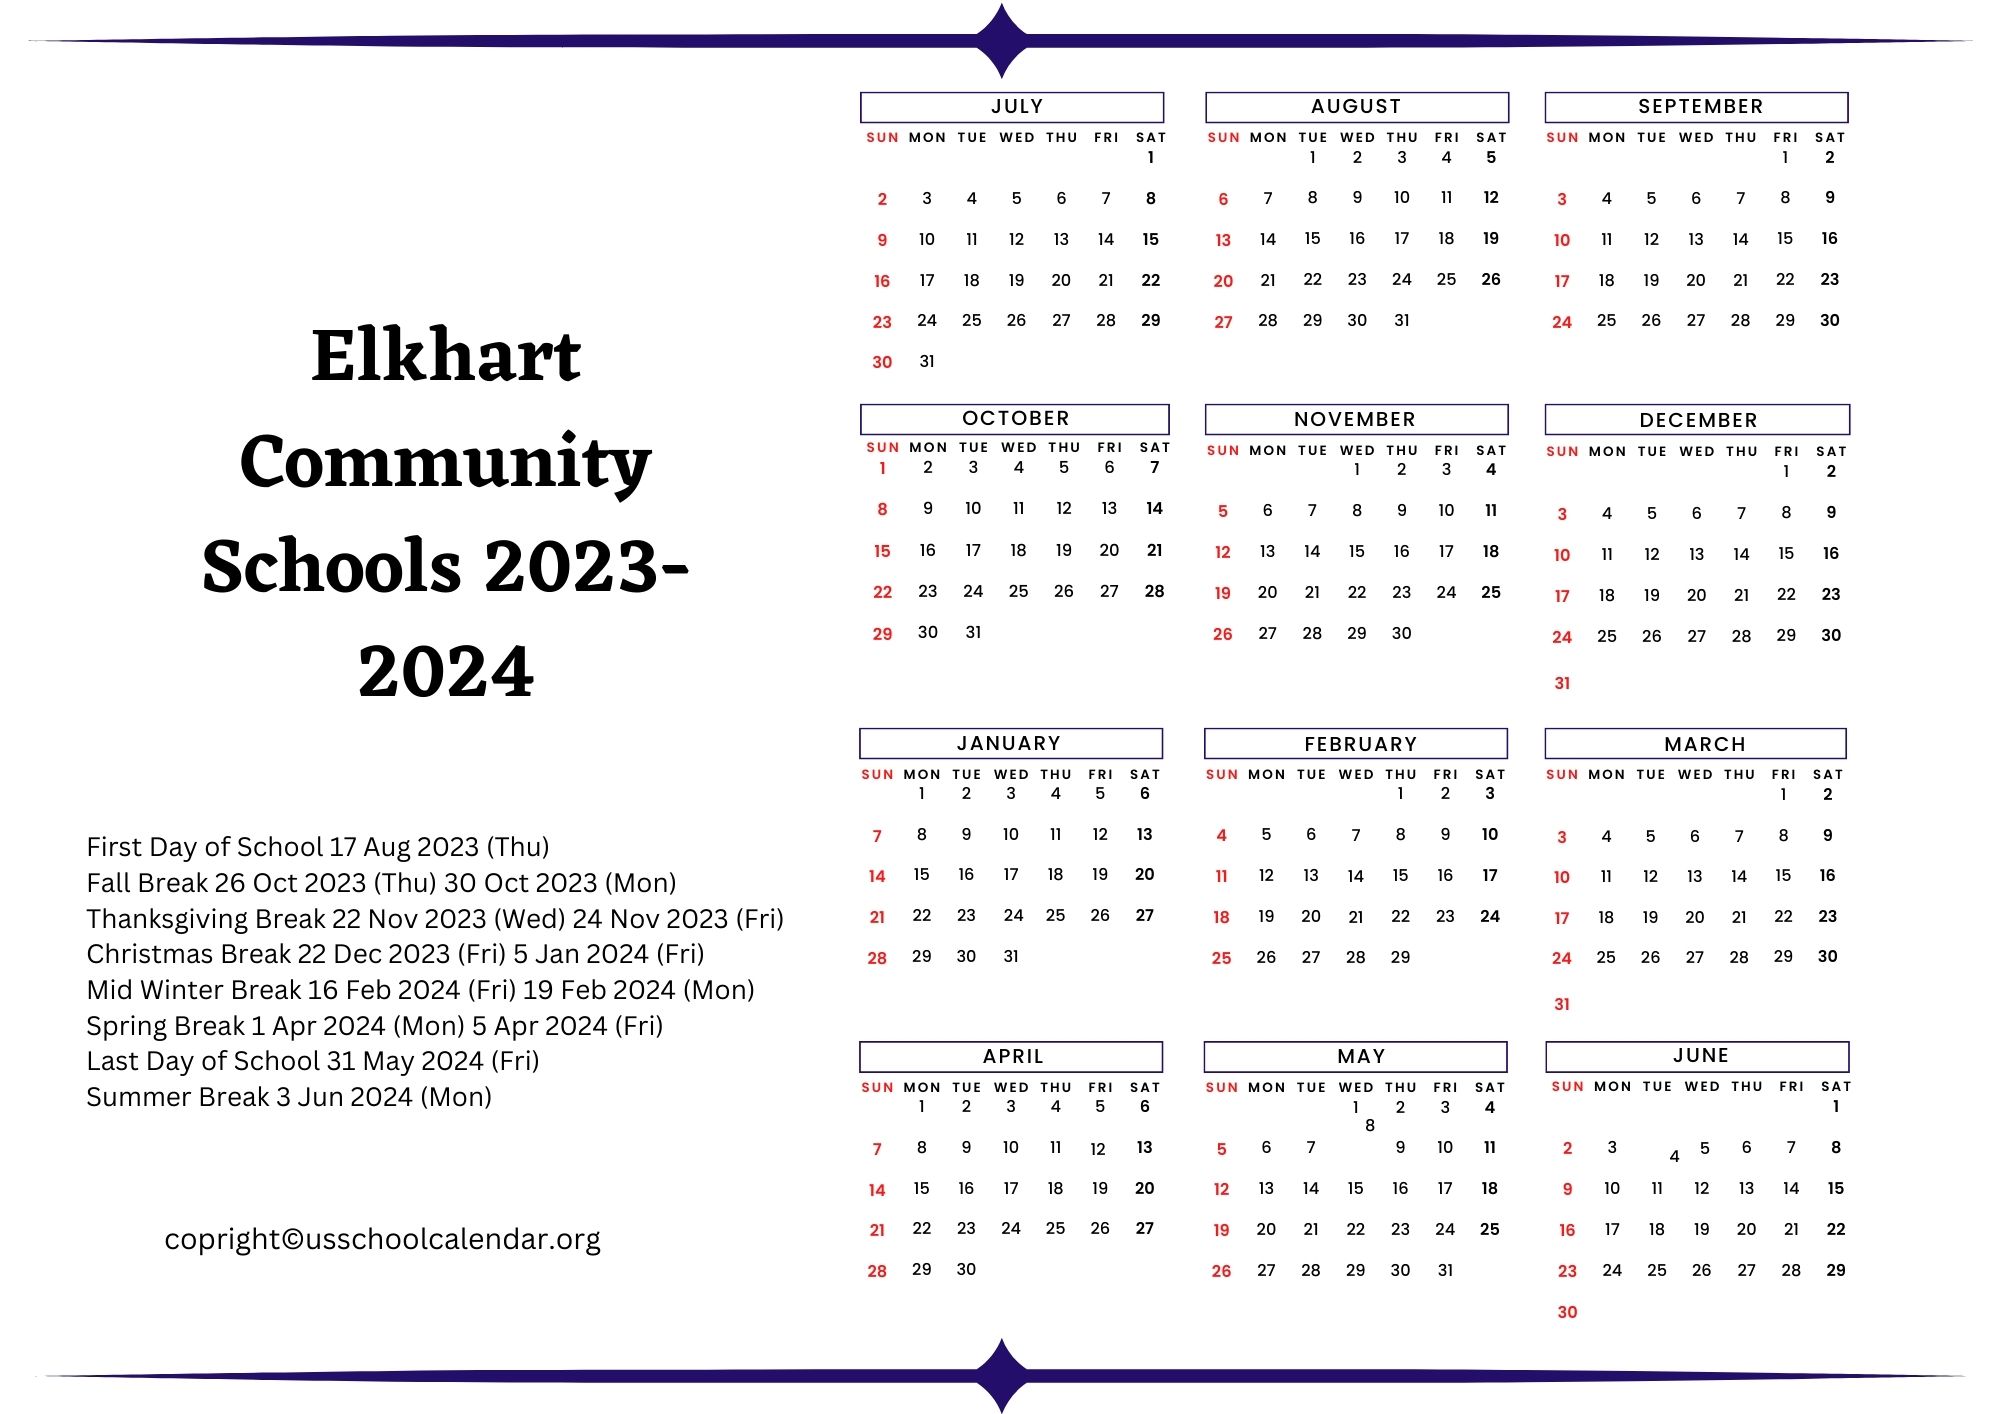 Elkhart Community Schools Calendar US School Calendar